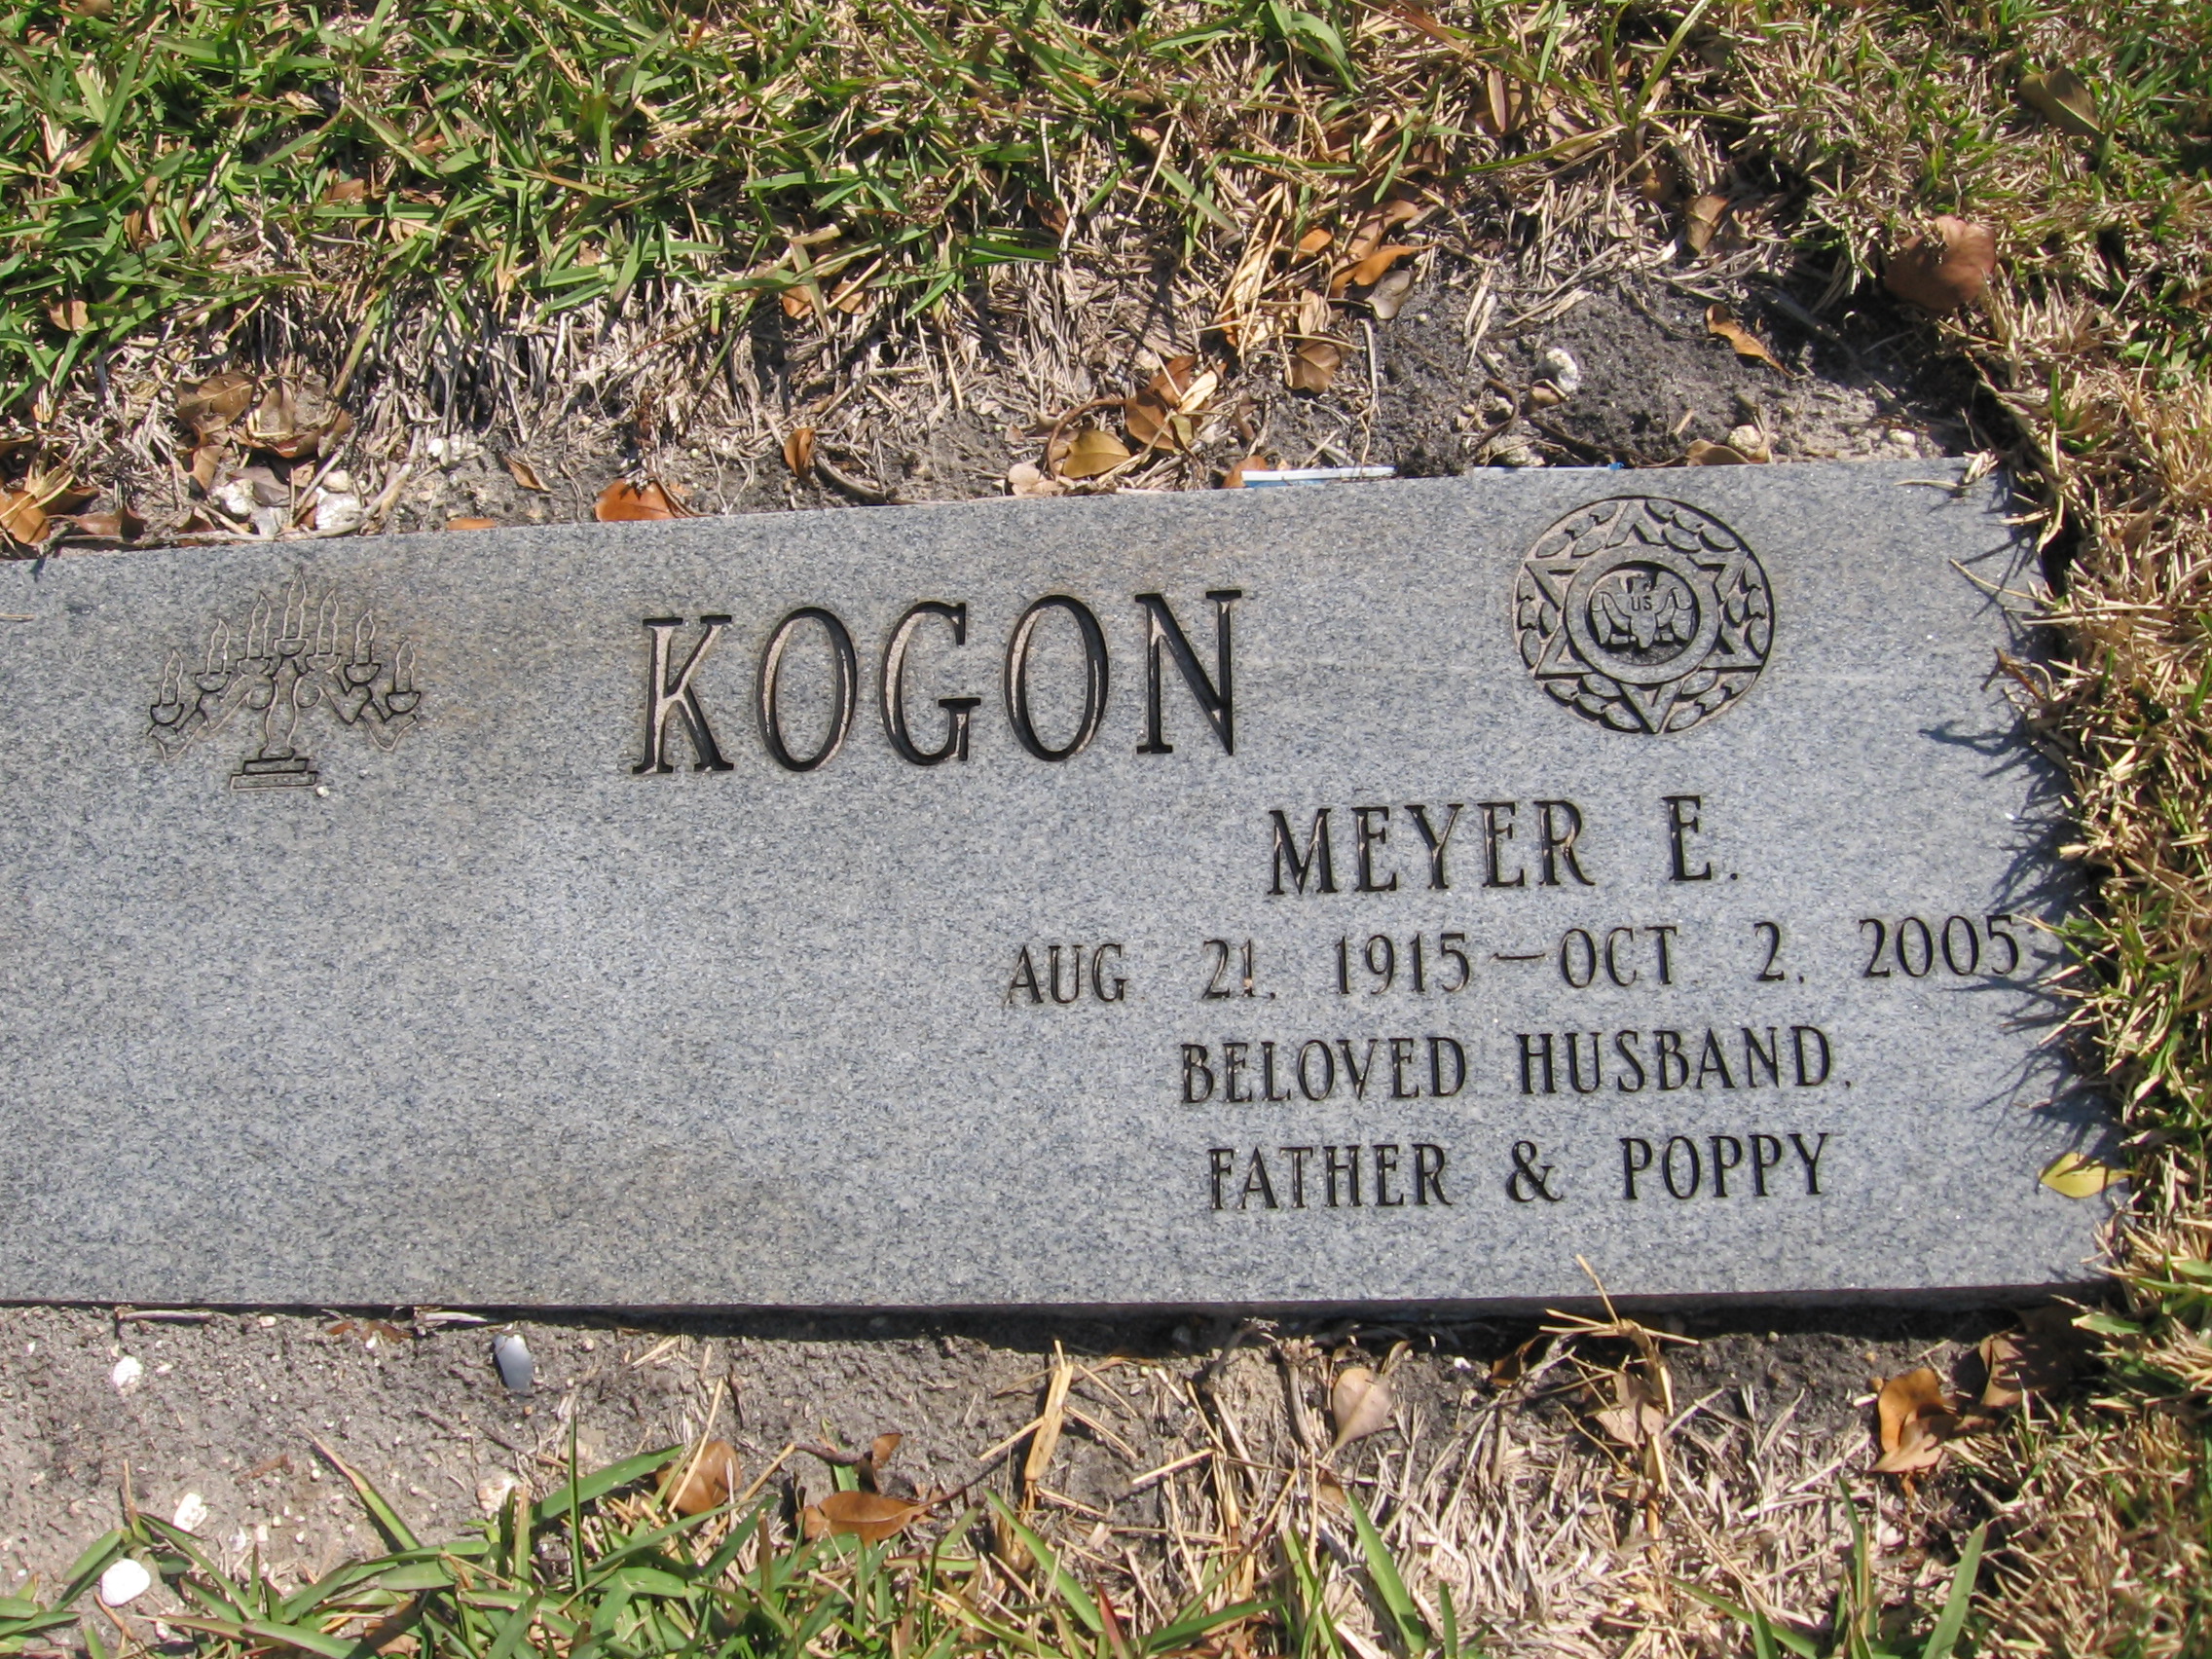 Meyer E Kogon